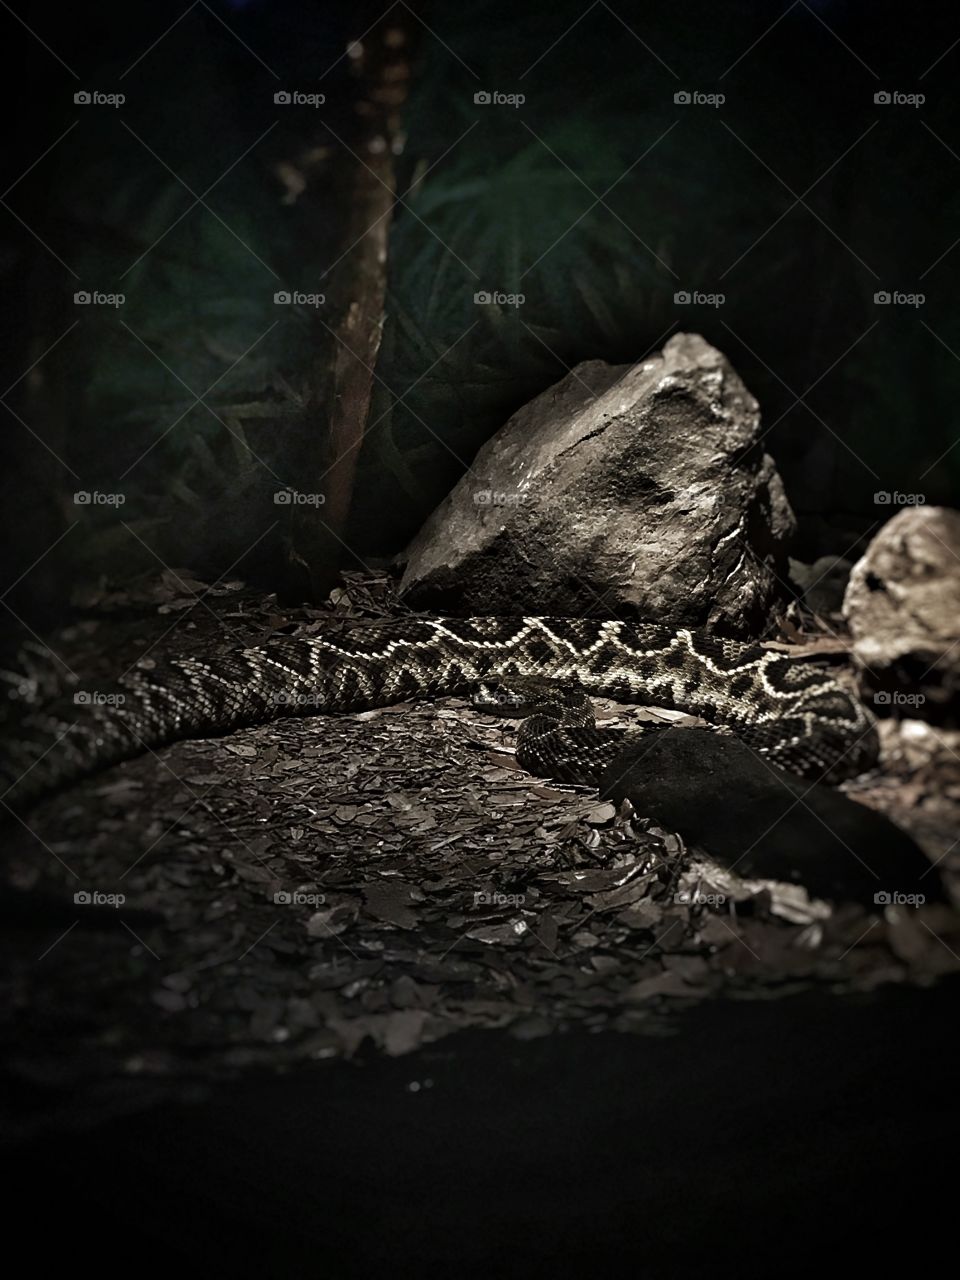 Dangerous serpent in the dark